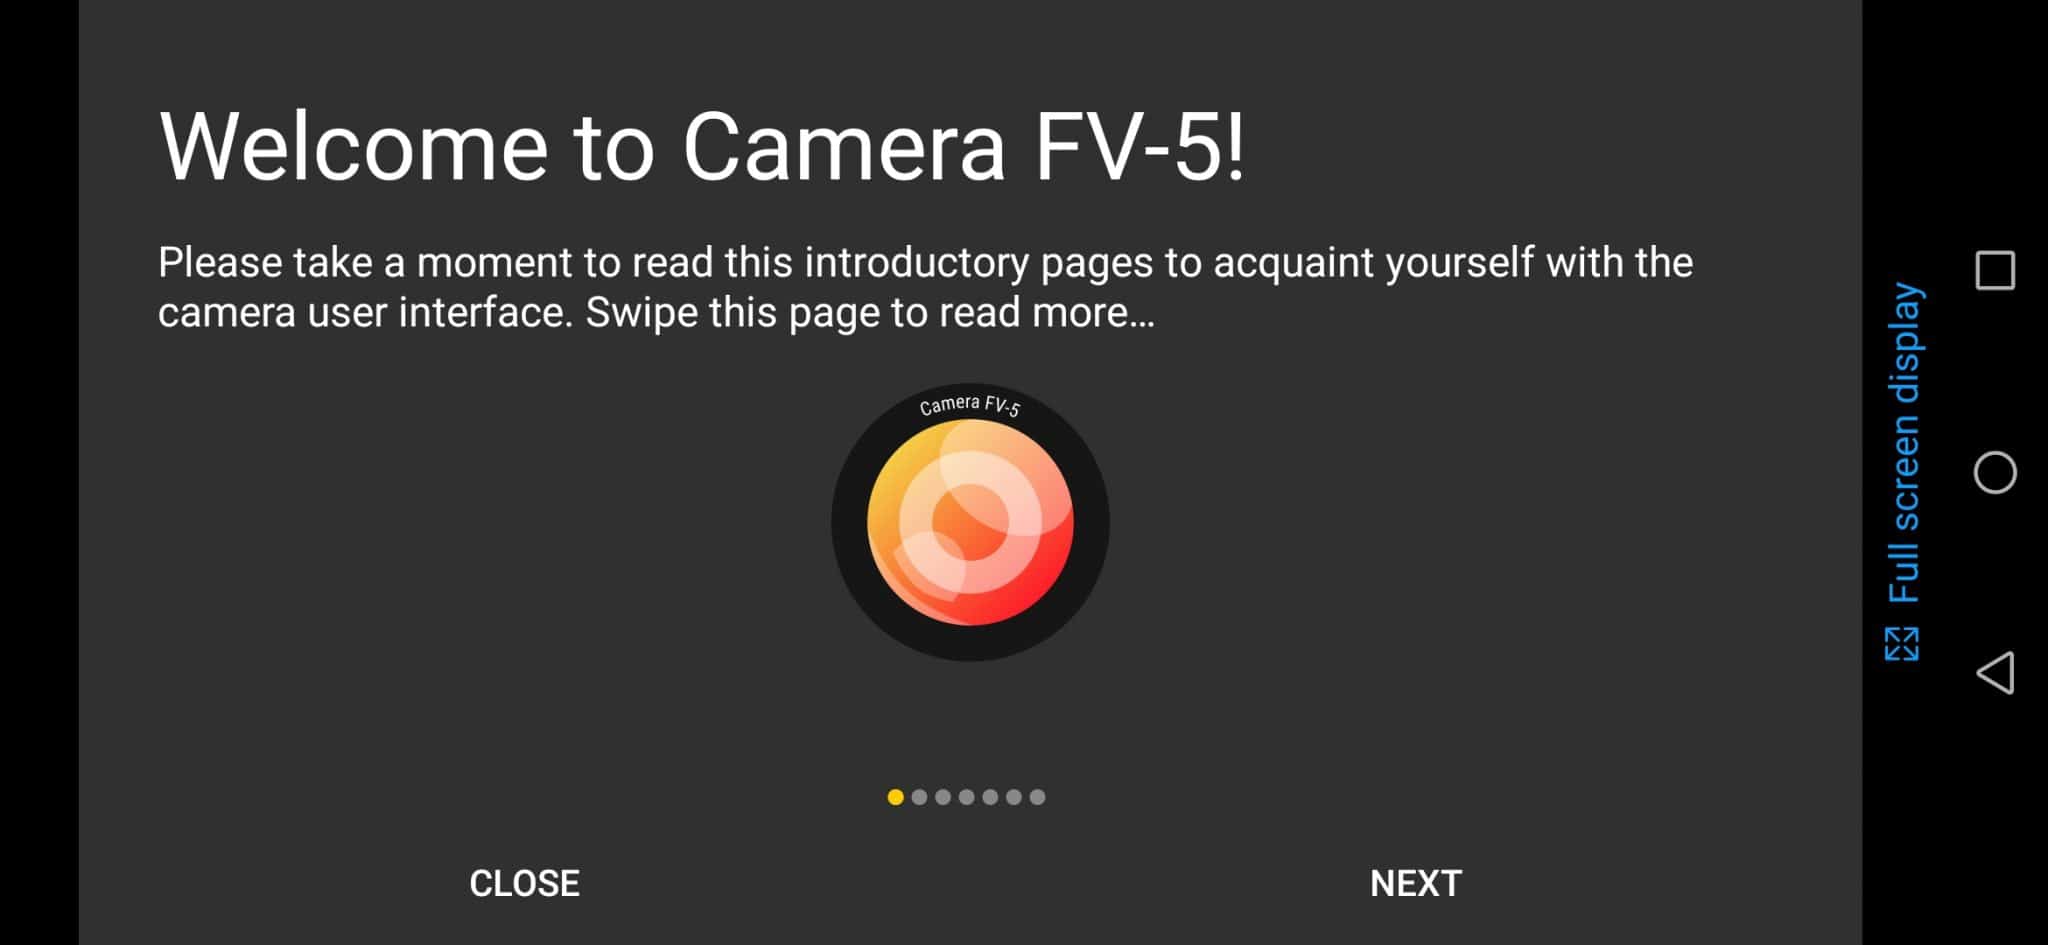 Camera FV-5 Lite Instructions